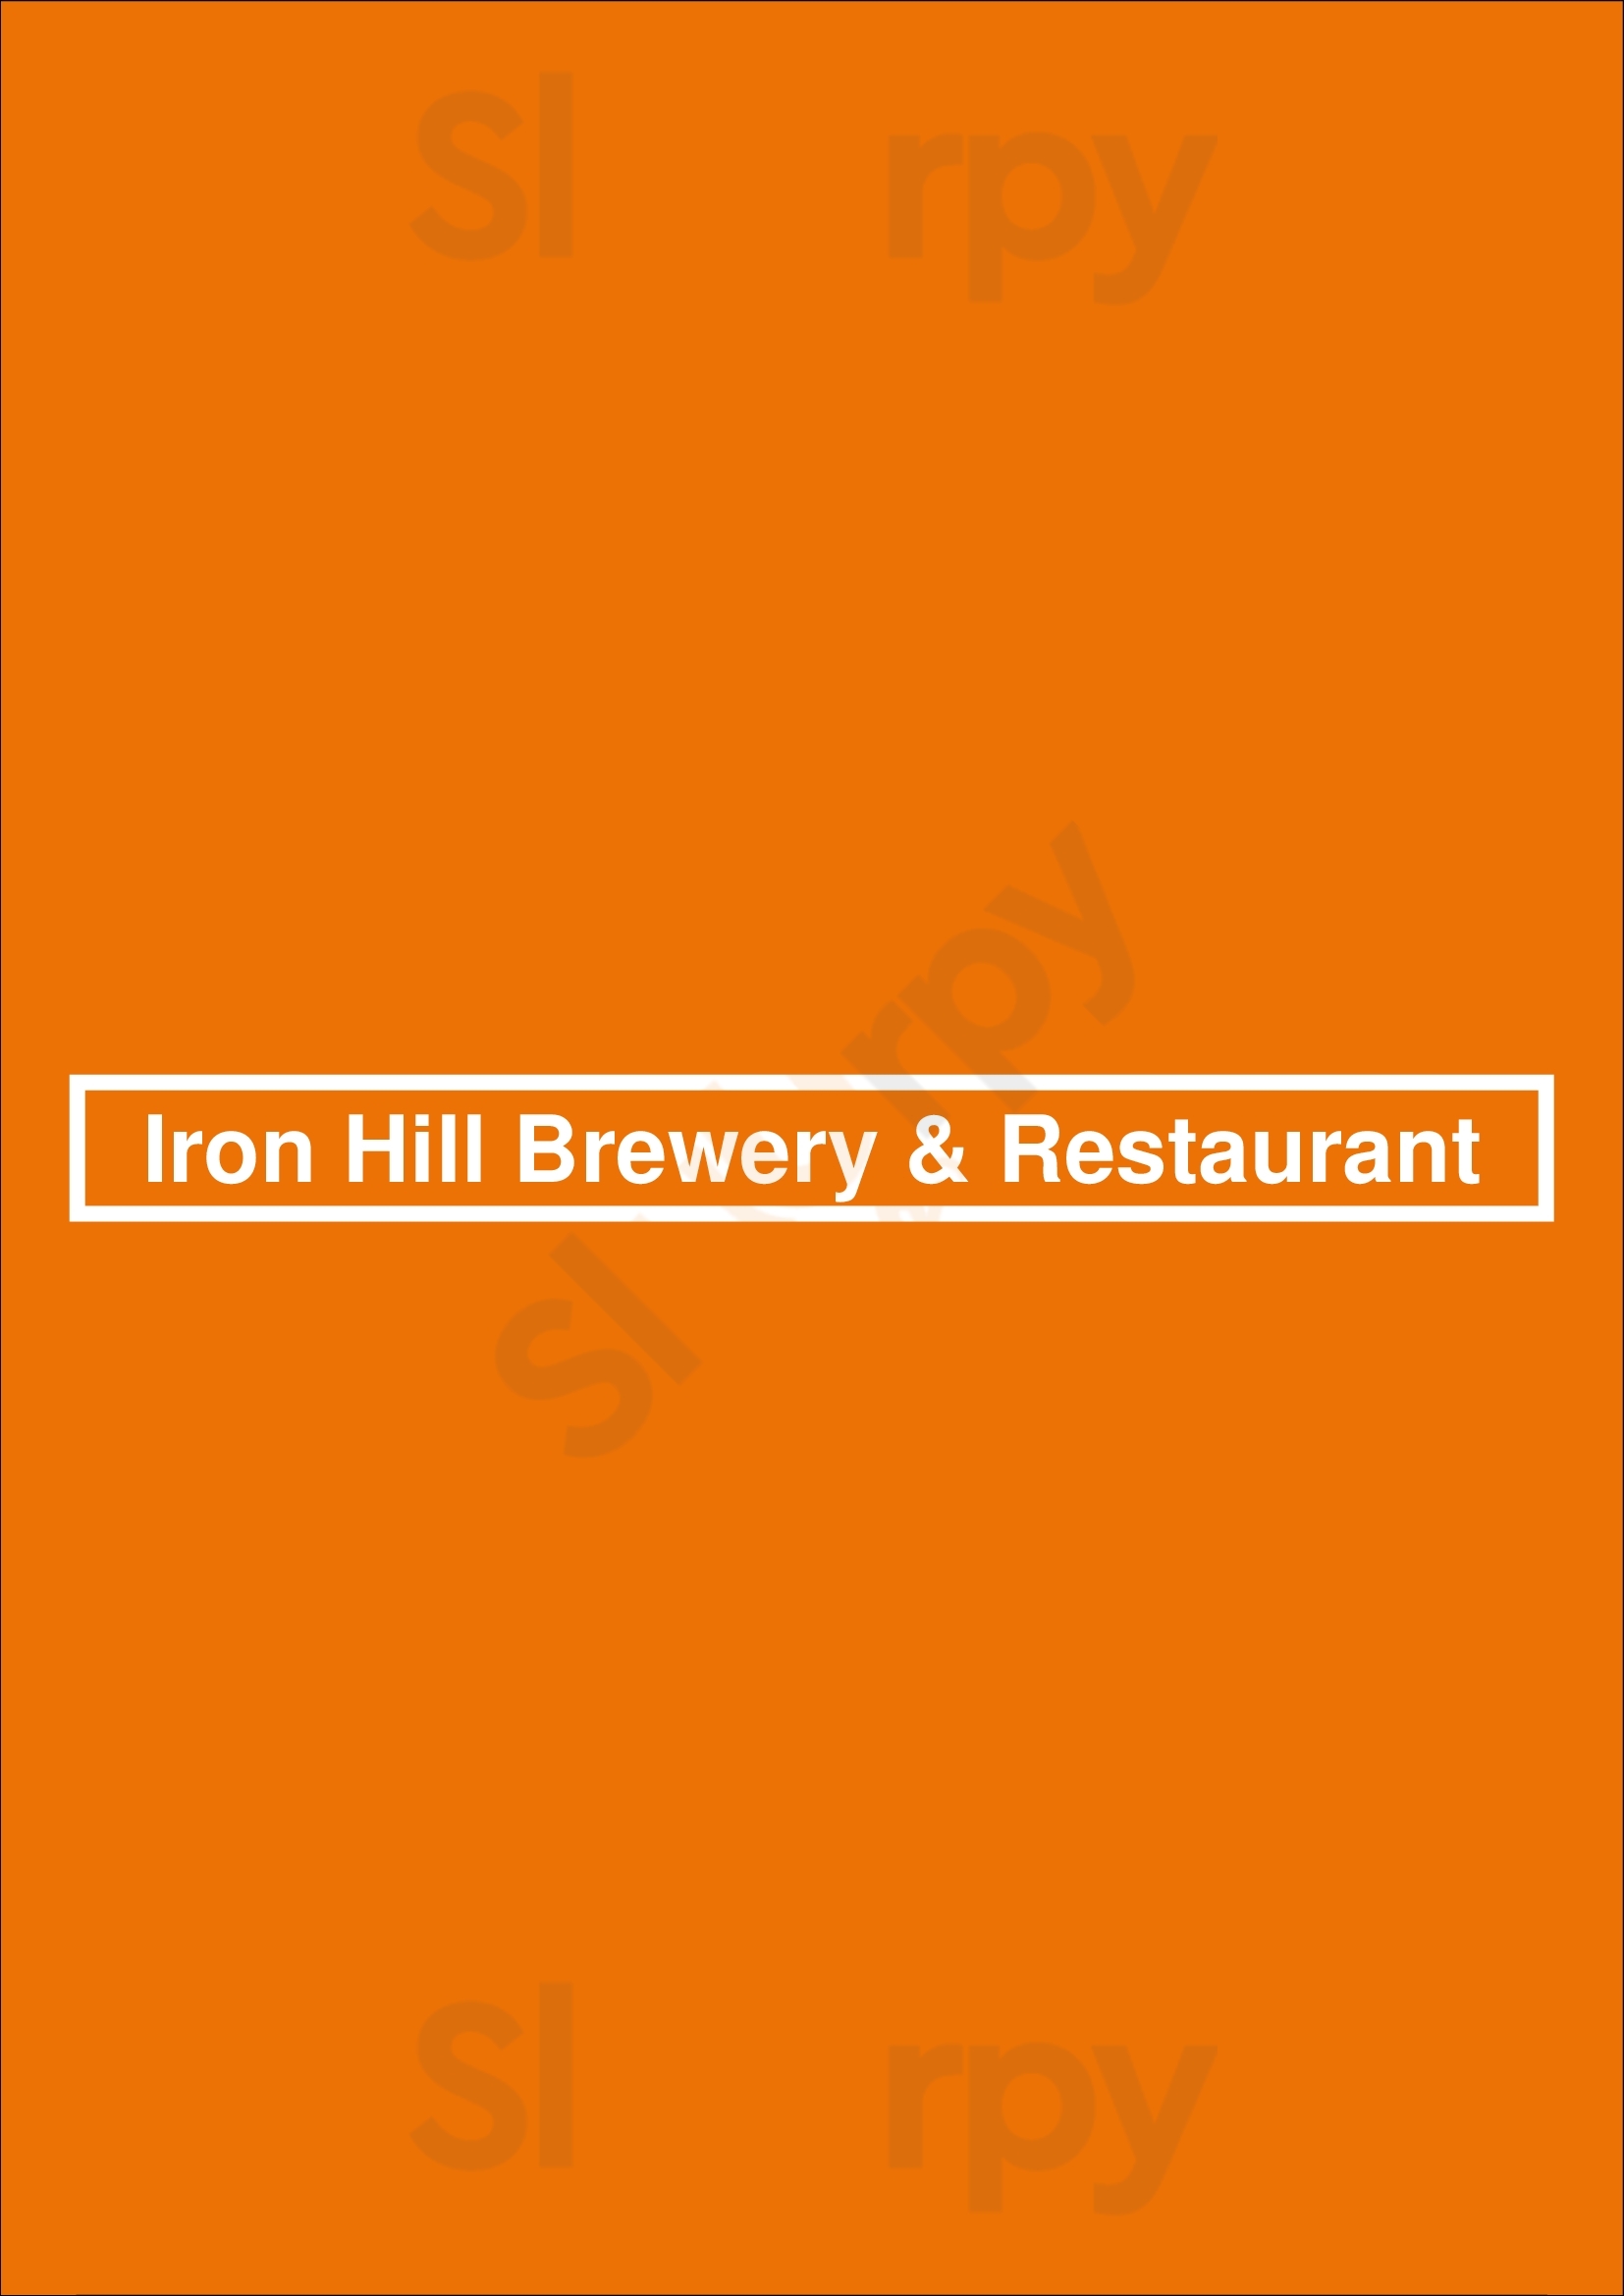 Iron Hill Brewery & Restaurant Lancaster Menu - 1